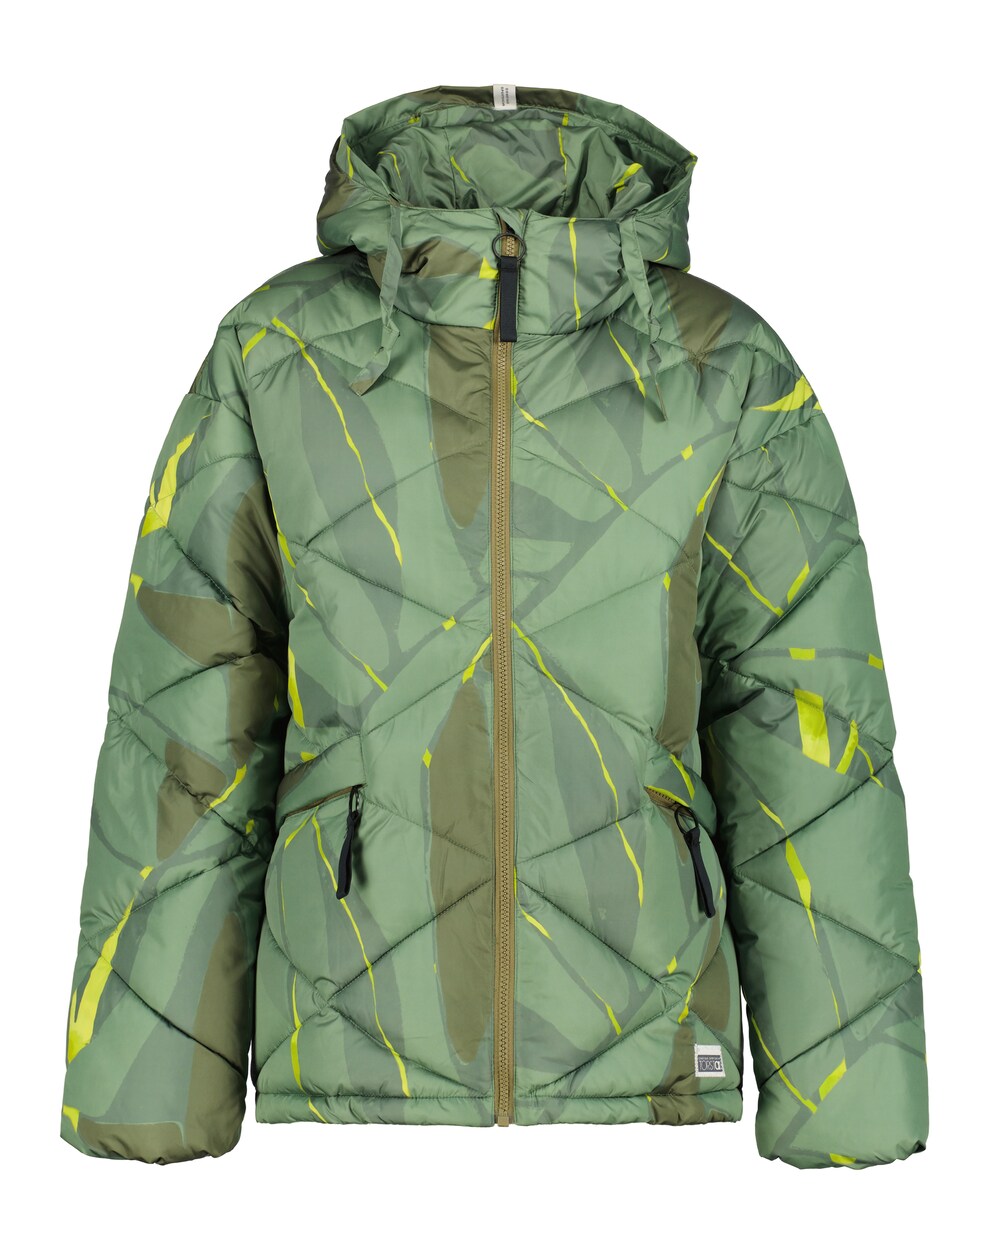 Спортивная куртка Torstai Como, оливковый/неоново-зеленый